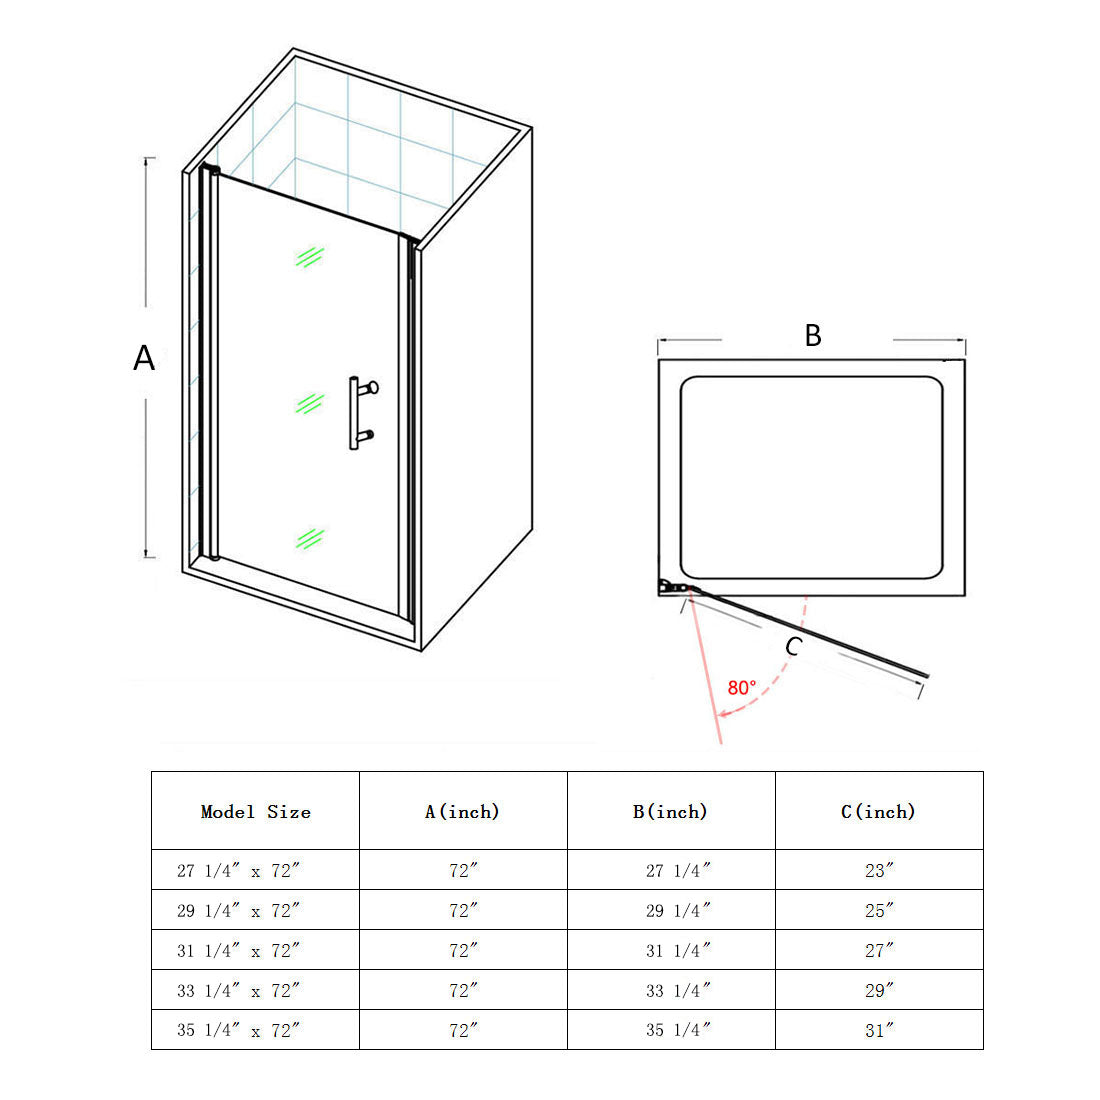 Sunny Shower Hinged Pivot Semi-Framless Glass Shower Door Size Description